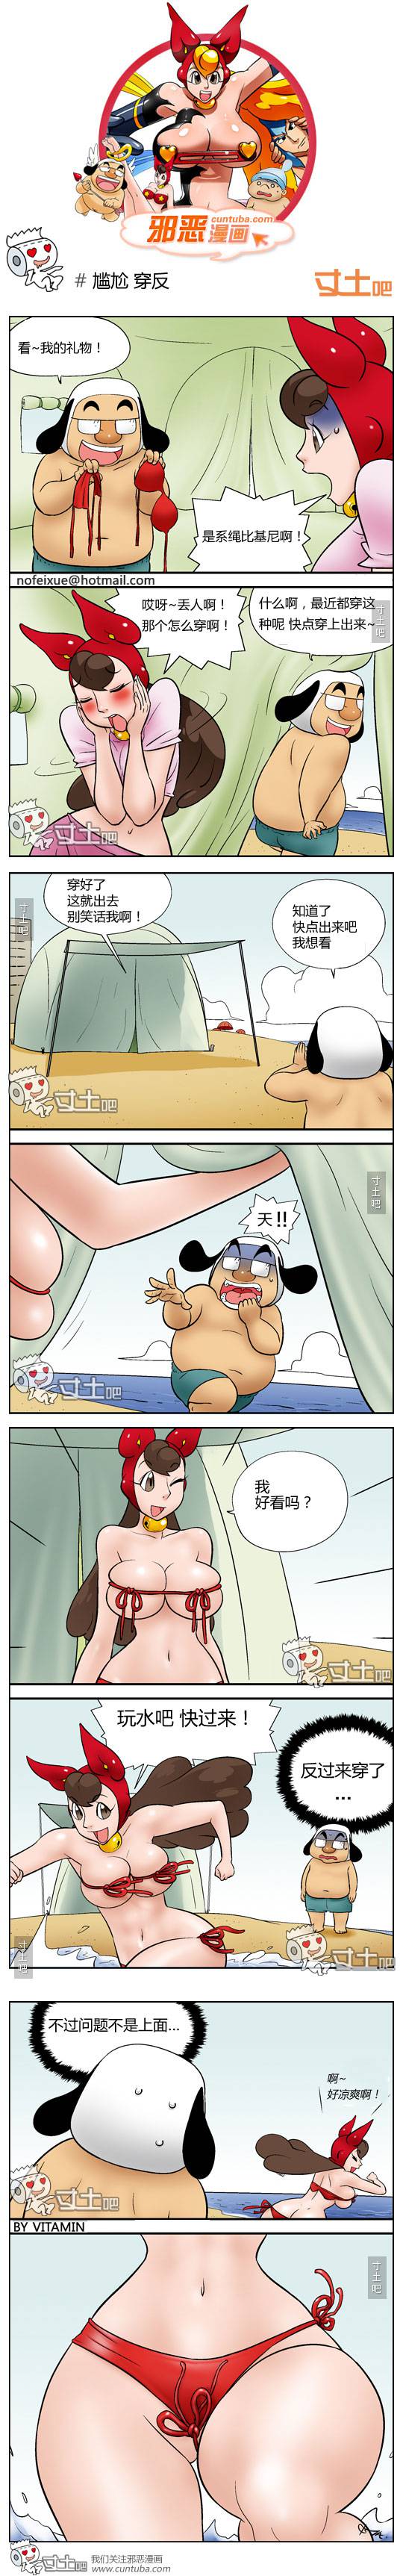 邪恶漫画爆笑囧图第119刊：癖好